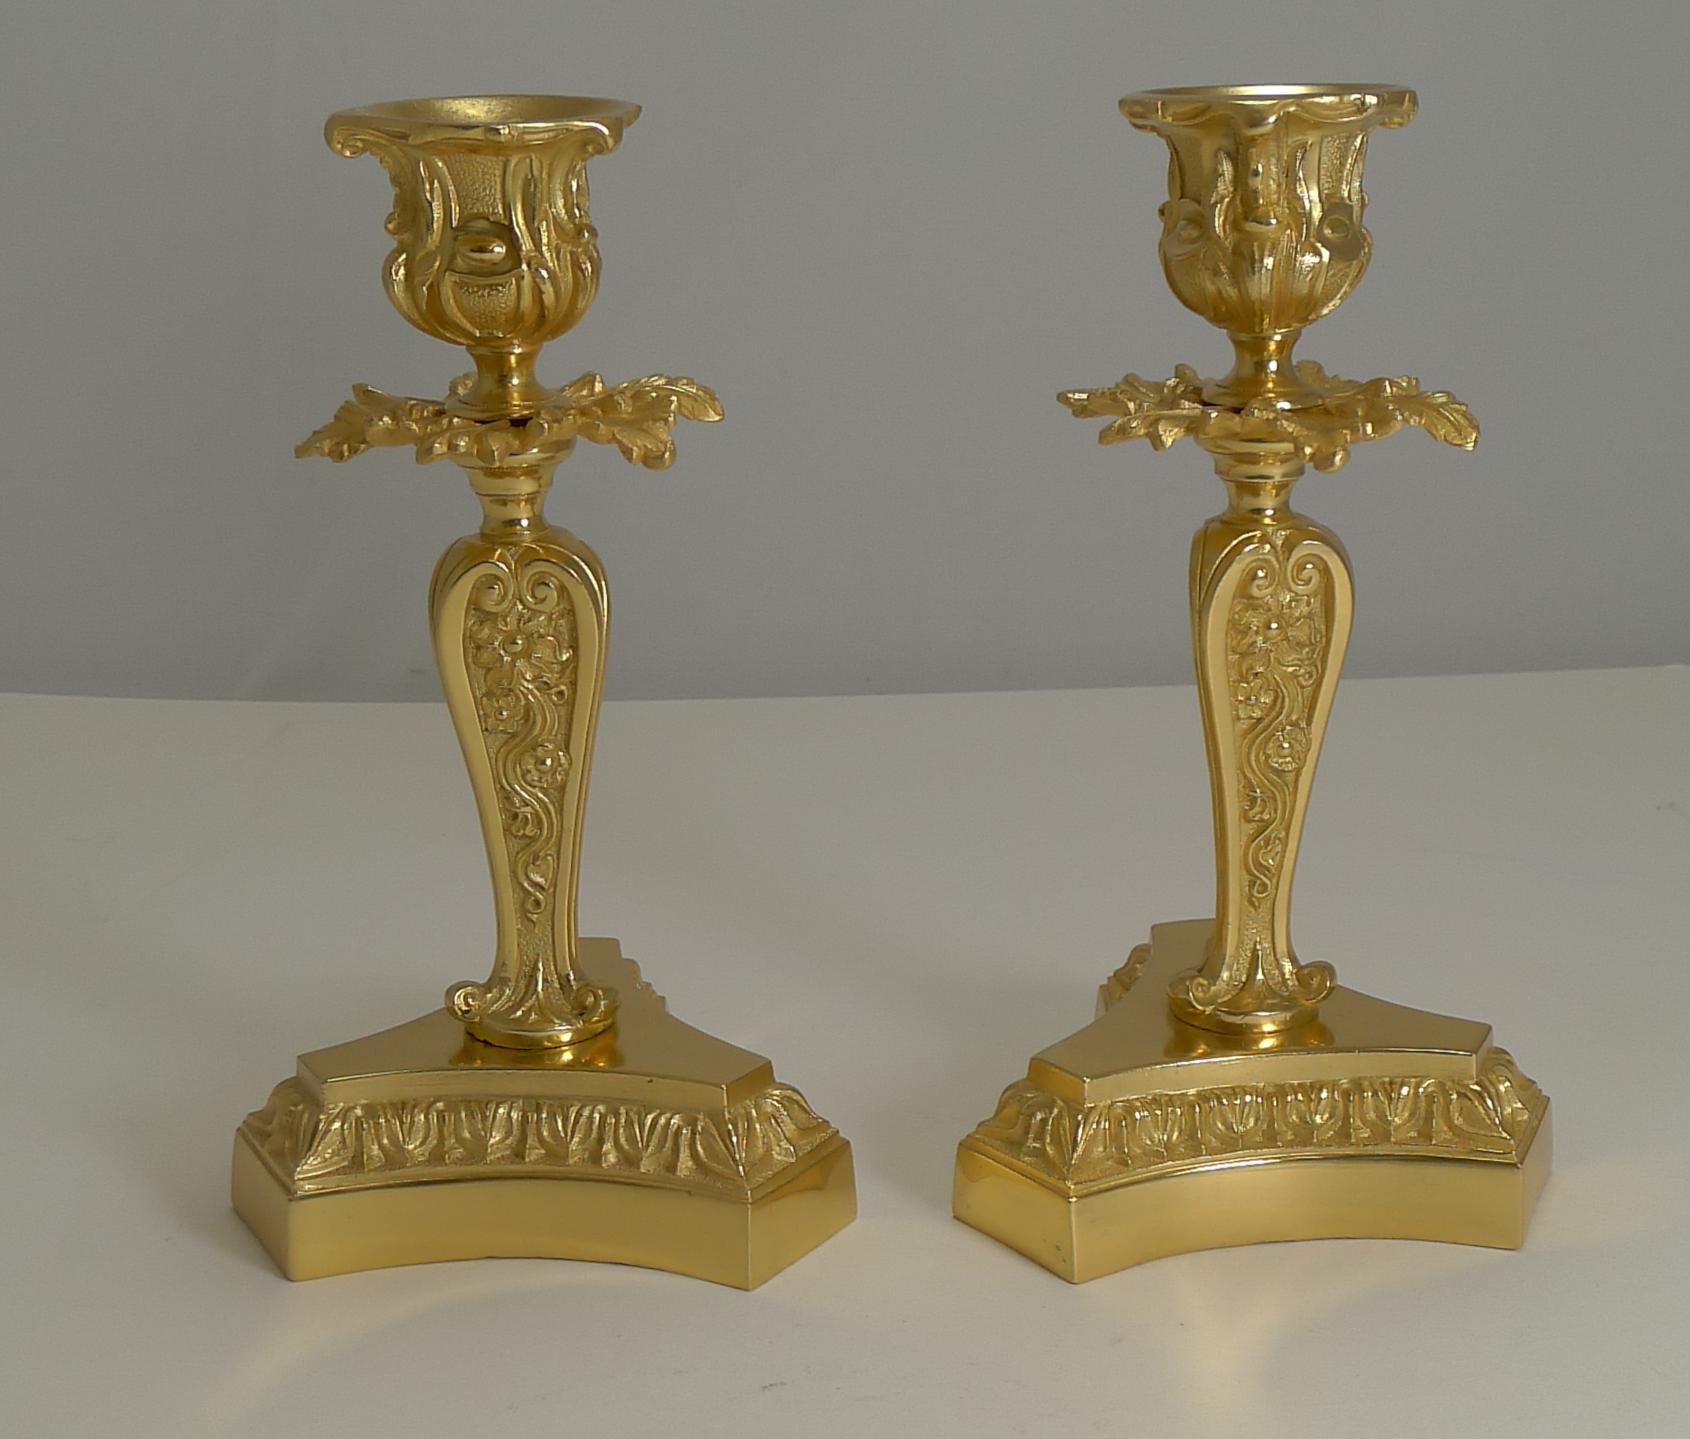 Ein wunderbar elegantes Paar Kerzenhalter aus Bronzeguss, französischer Herkunft und aus der Zeit um 1890.

Diese Größe ist perfekt für einen Schreibtisch oder Kaminsims mit einer Basis, die ungefähr 4